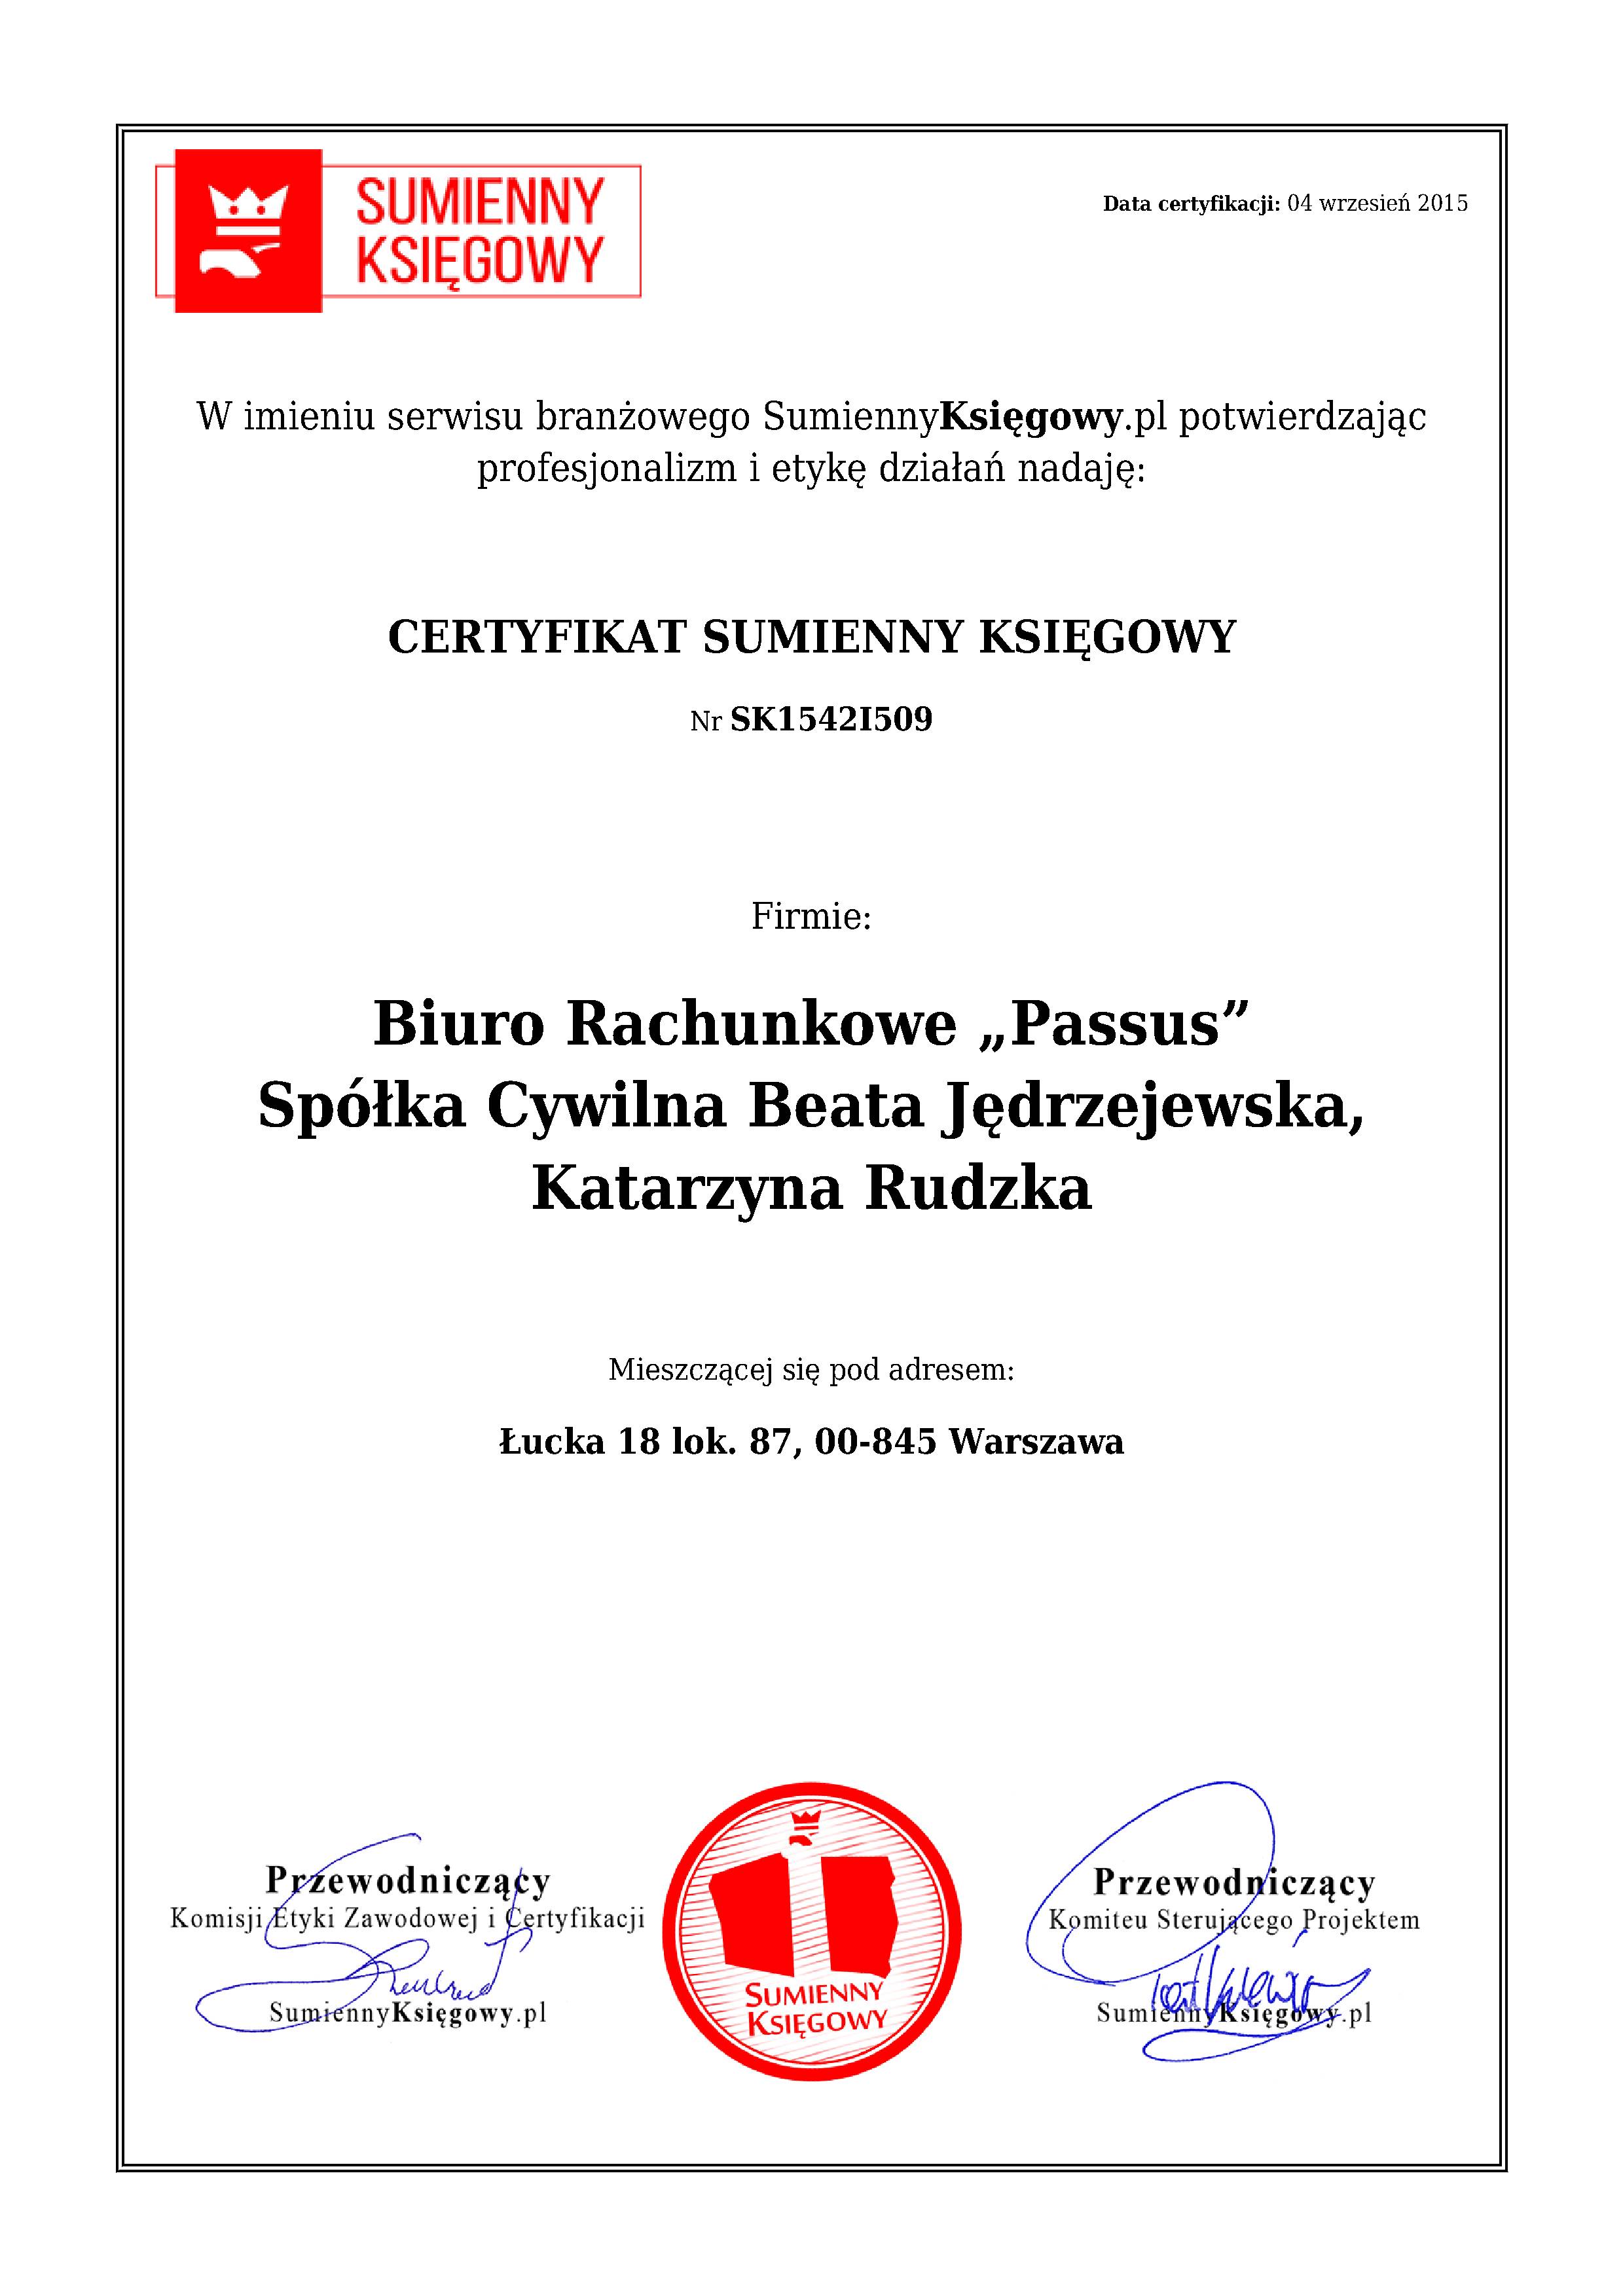 Biuro Rachunkowe „Passus” Spółka Cywilna Beata Jędrzejewska, Katarzyna Rudzka certyfikat 1